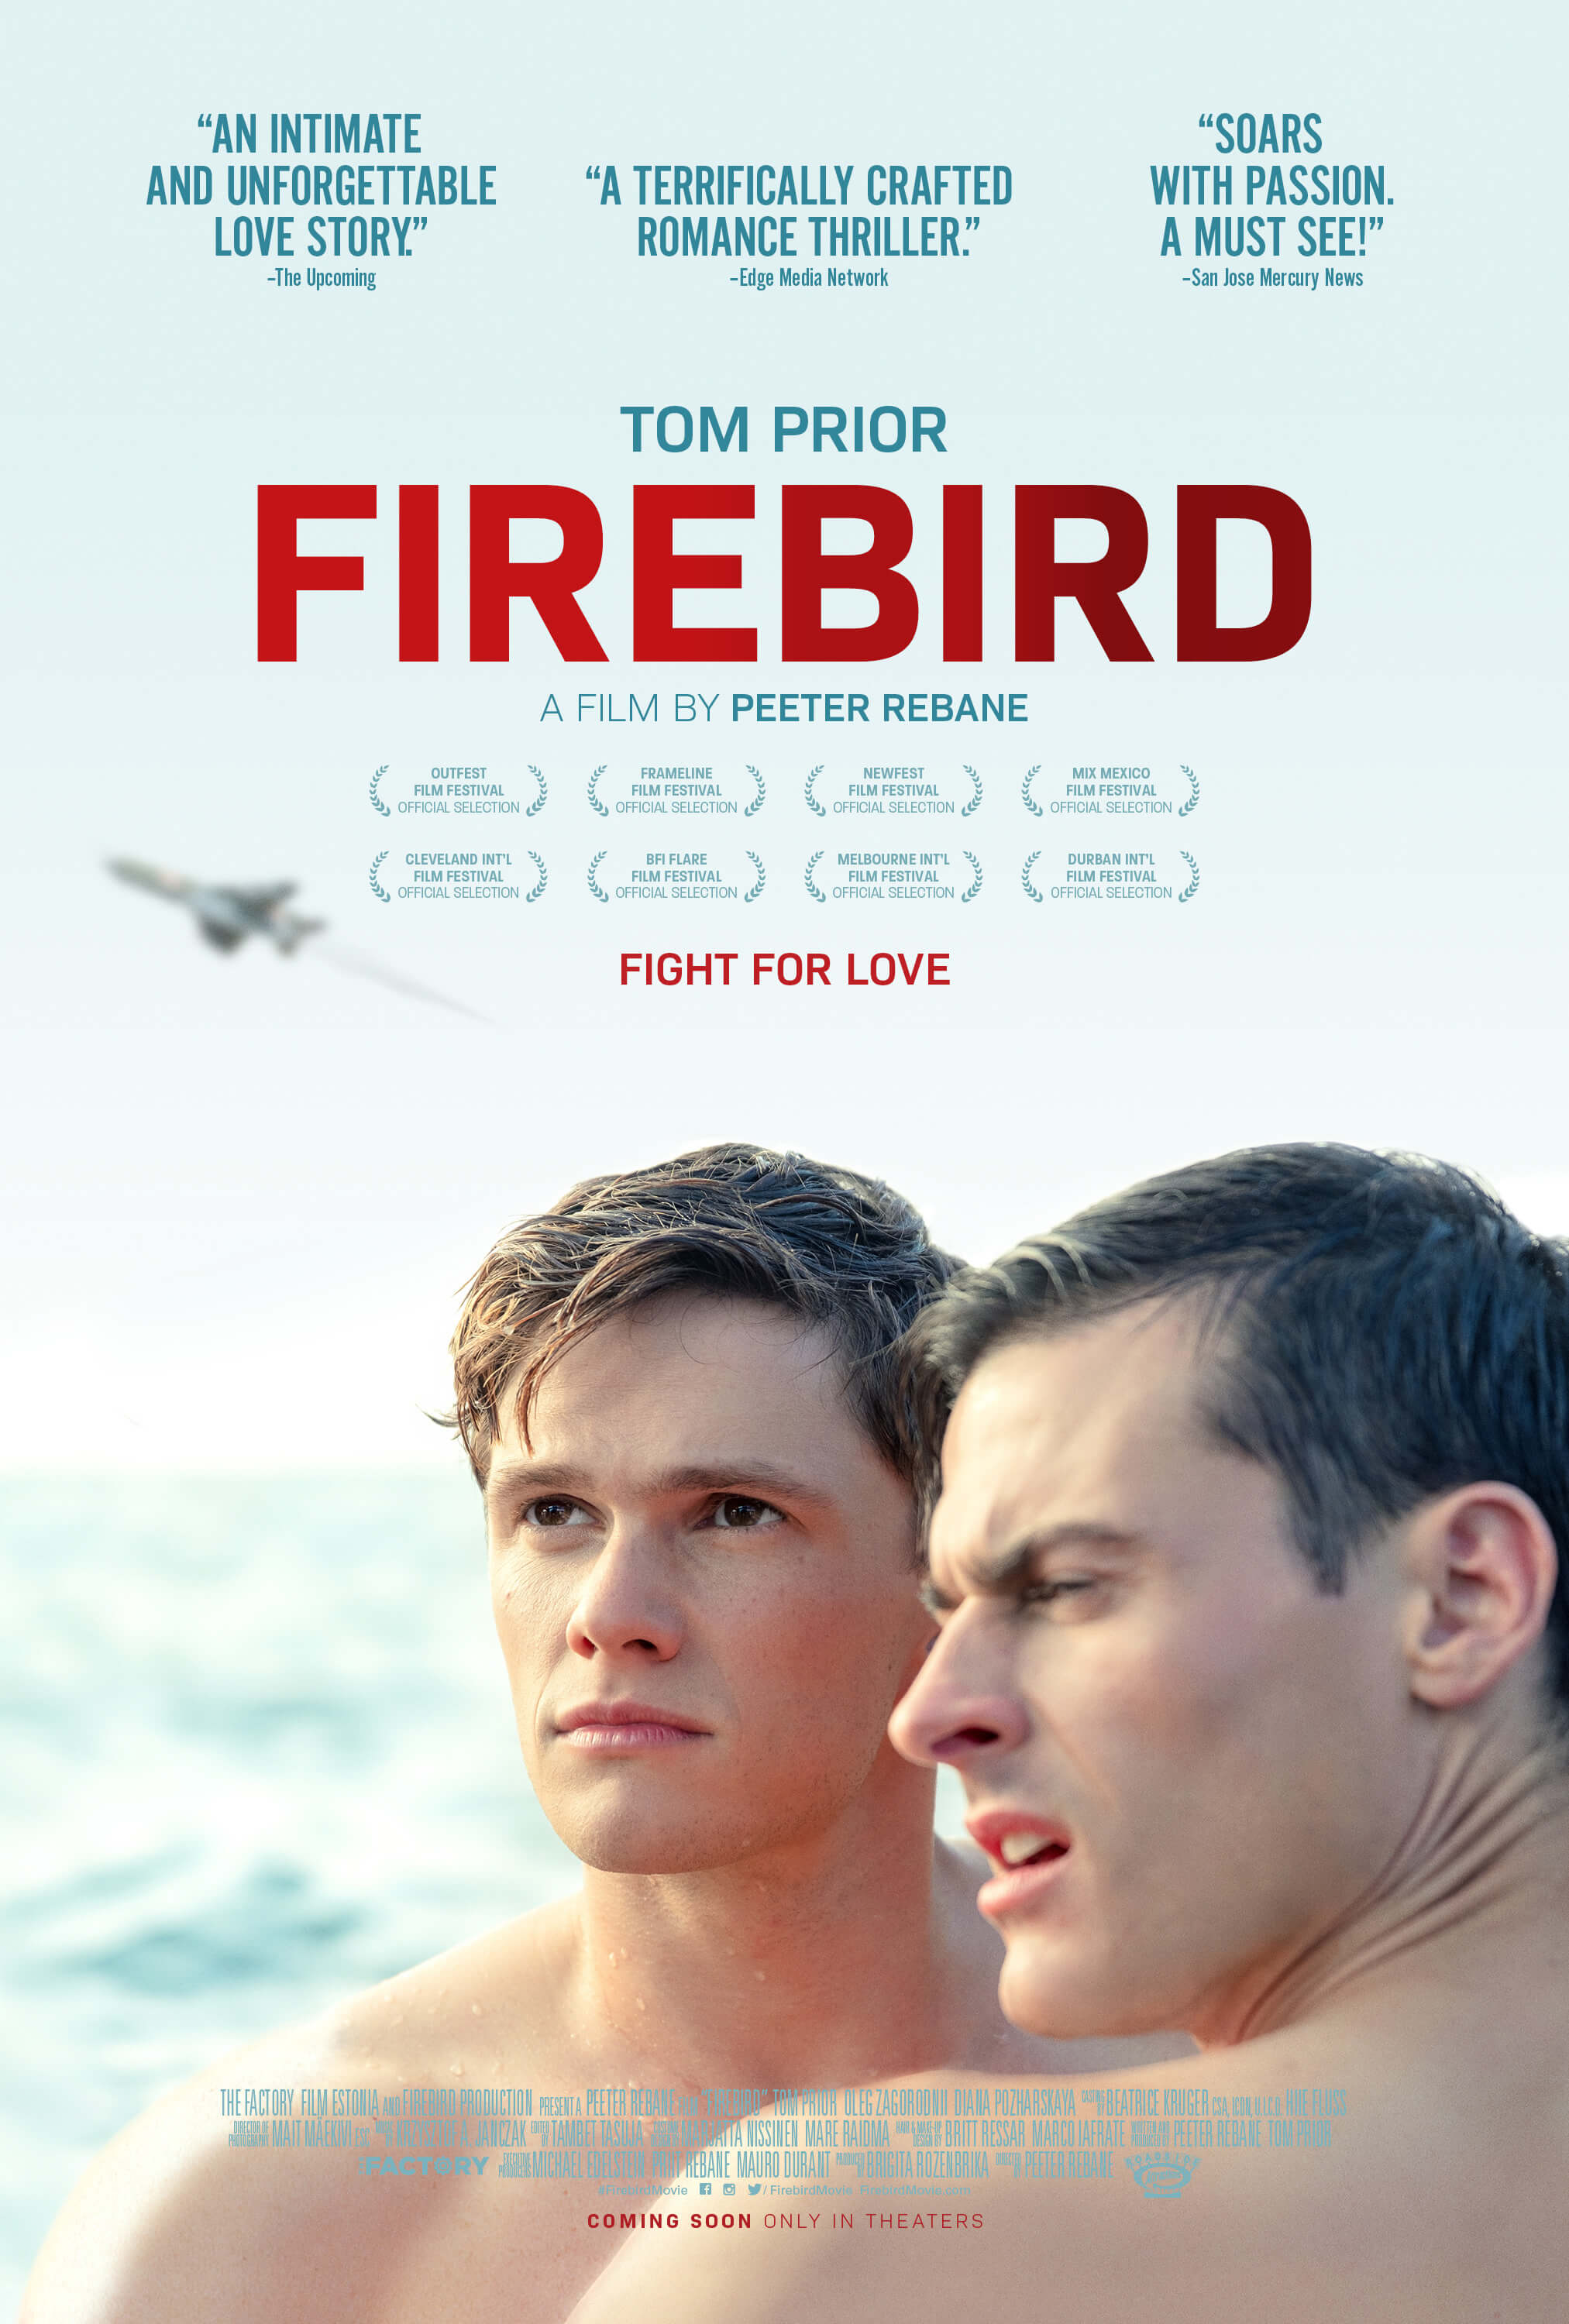 Watch trailer for firebird